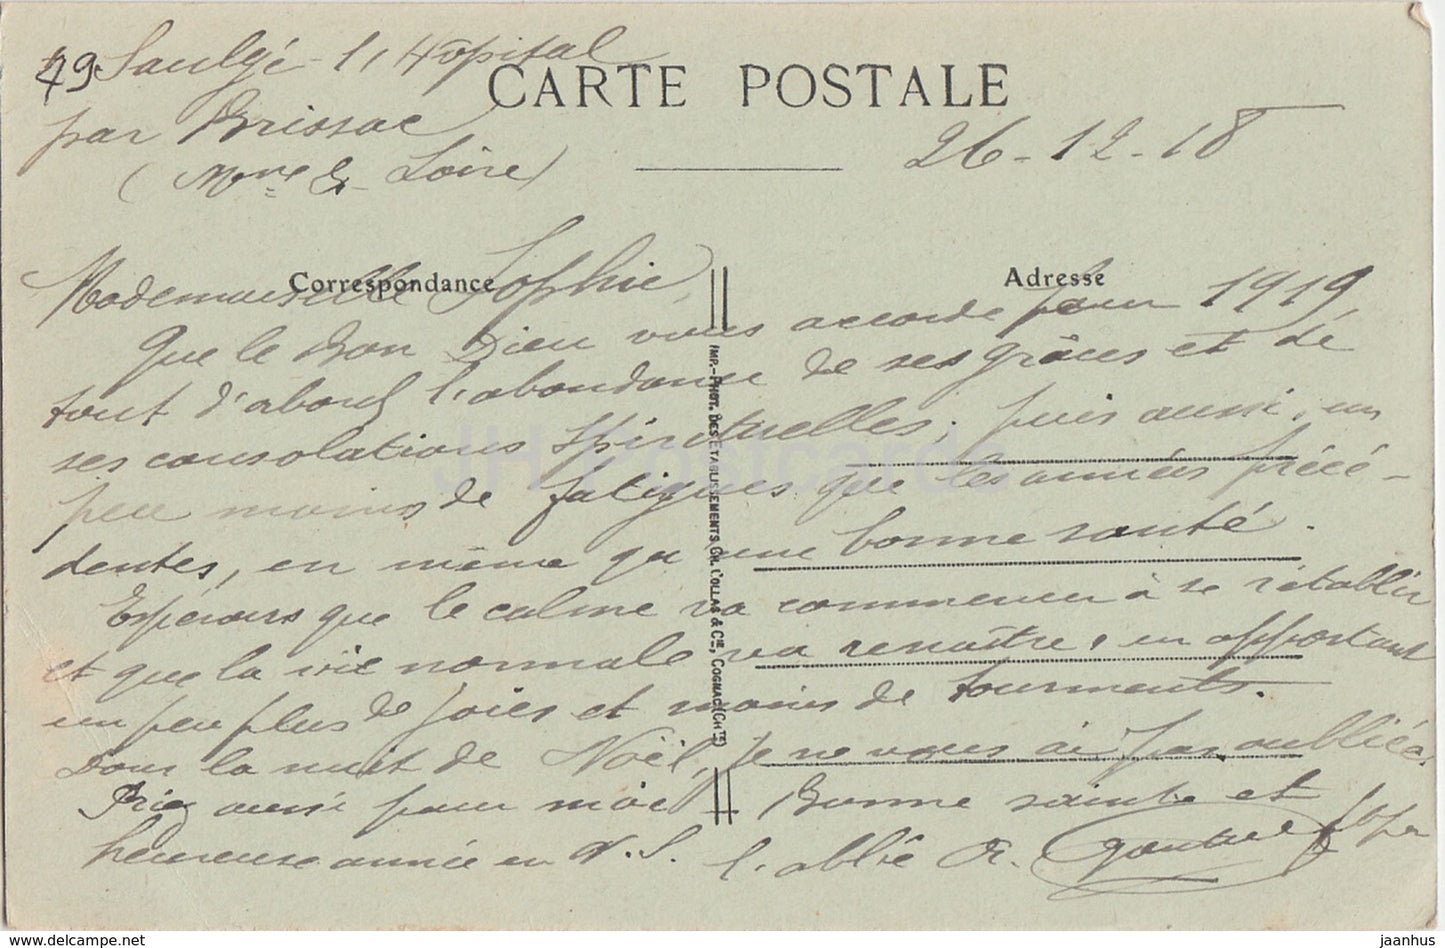 Saulge - Le Chateau - castle - 1918 - old postcard - France - used